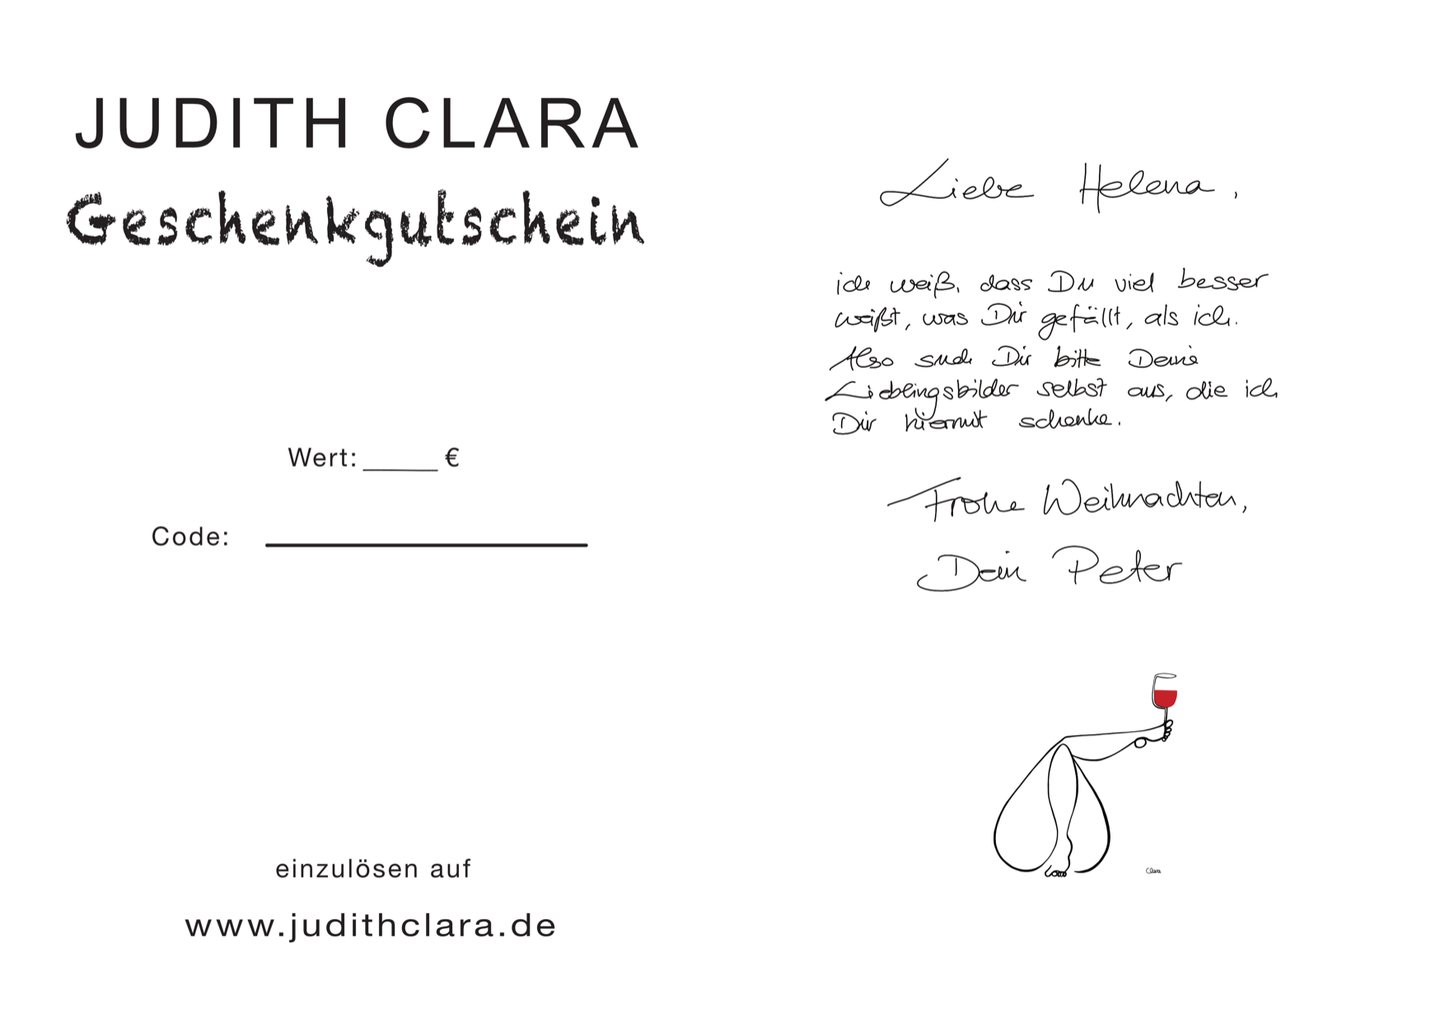 JUDITH CLARA ♥ Geschenkgutschein-Geschenkgutschein-Judith Clara-15,00 €-one-line-art